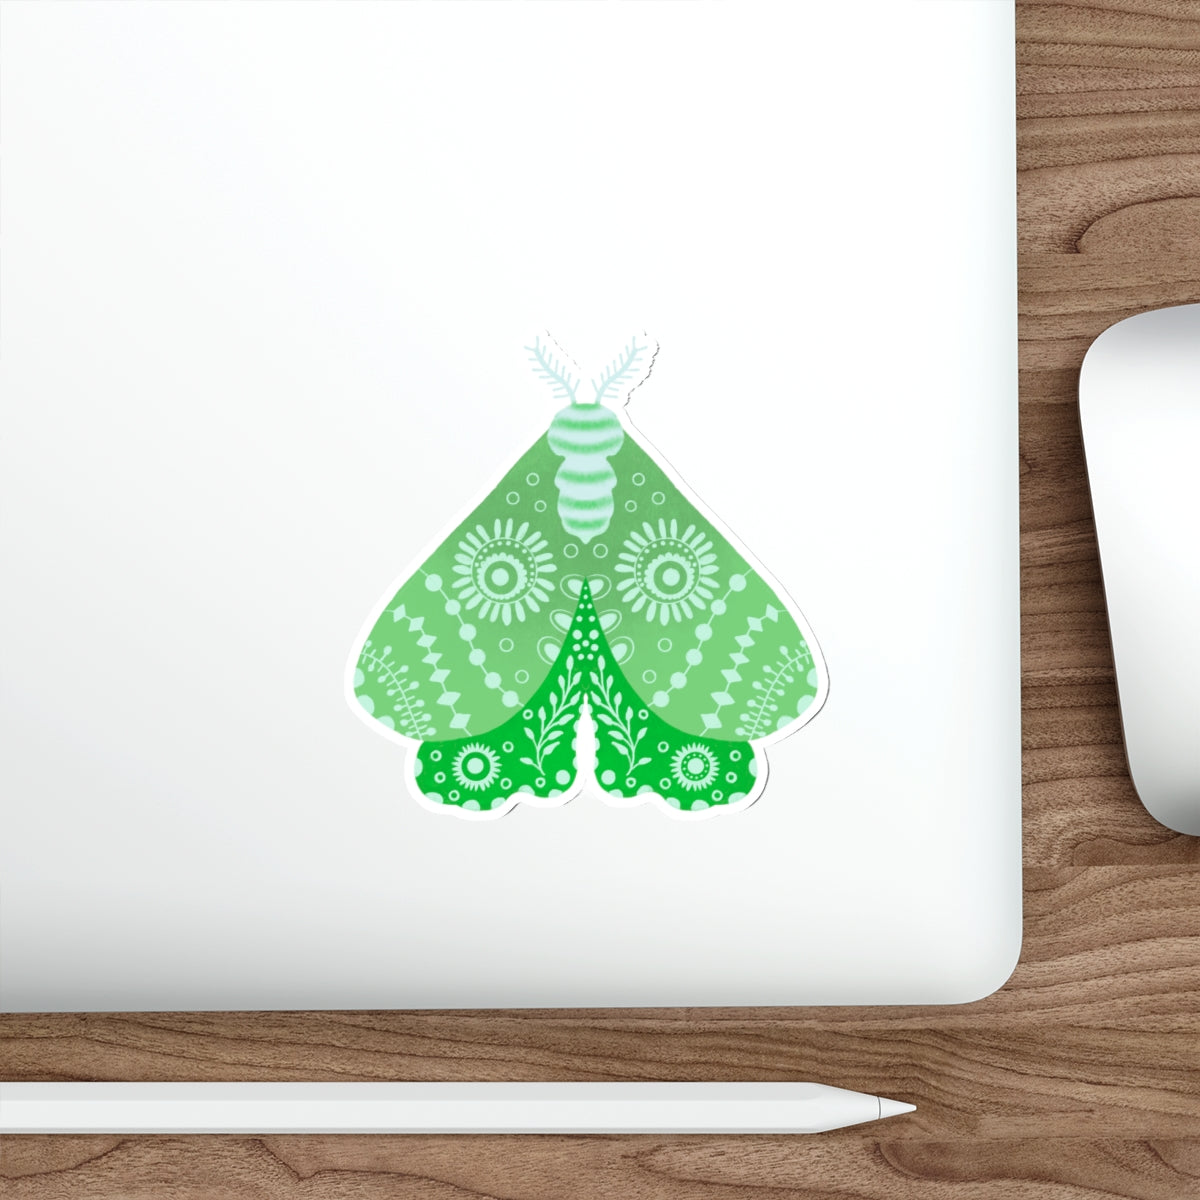 Folk Art Moth in Green Die Cut Sticker